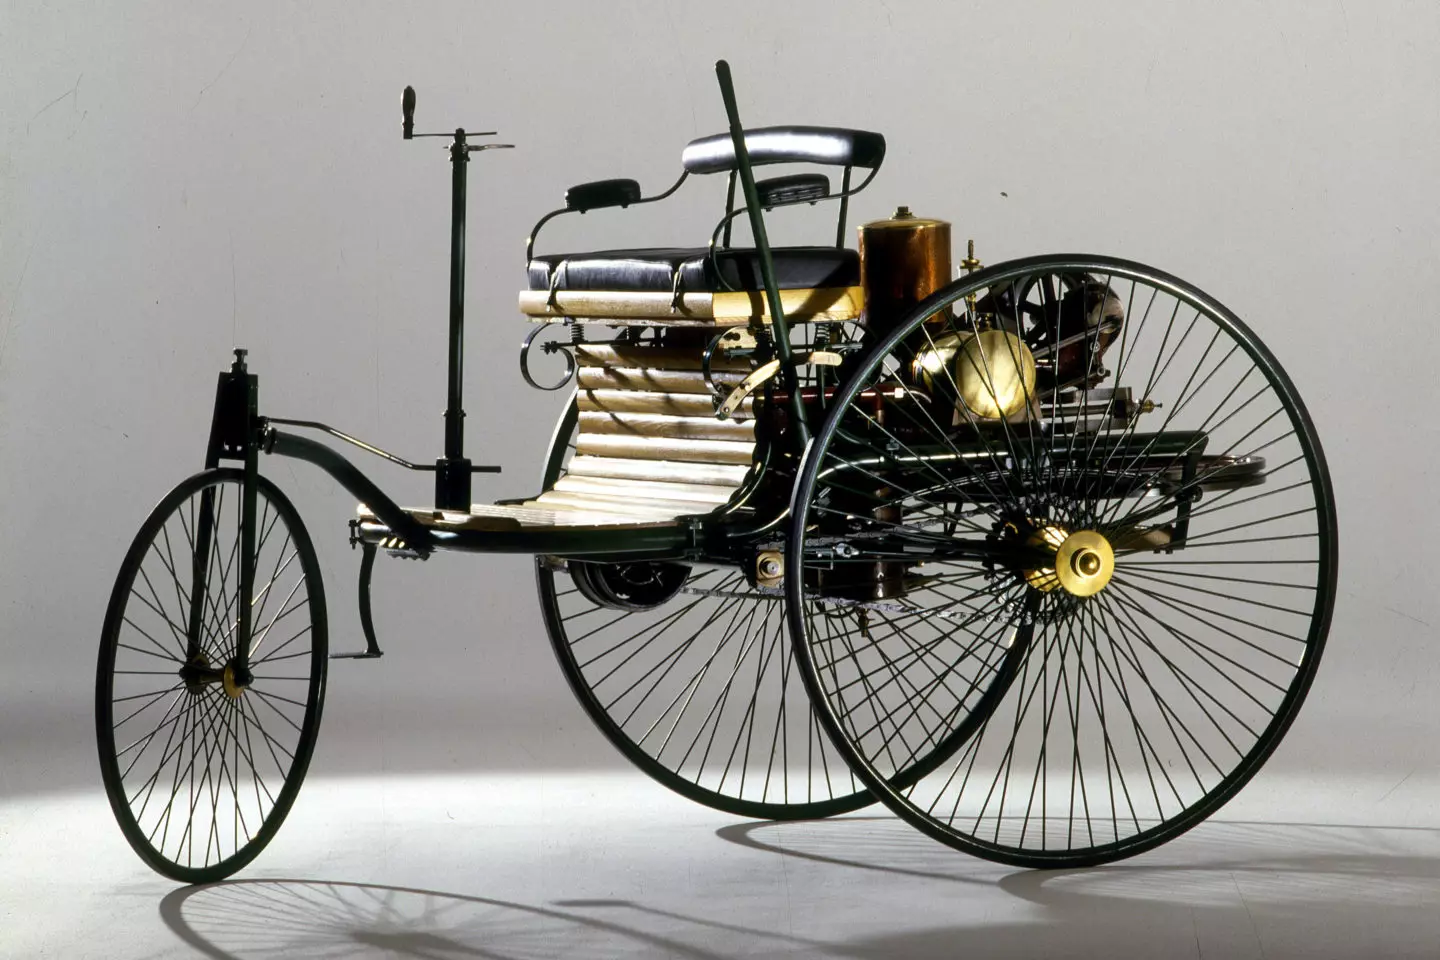 Benz-Patent-Motorwagen Replica 1886